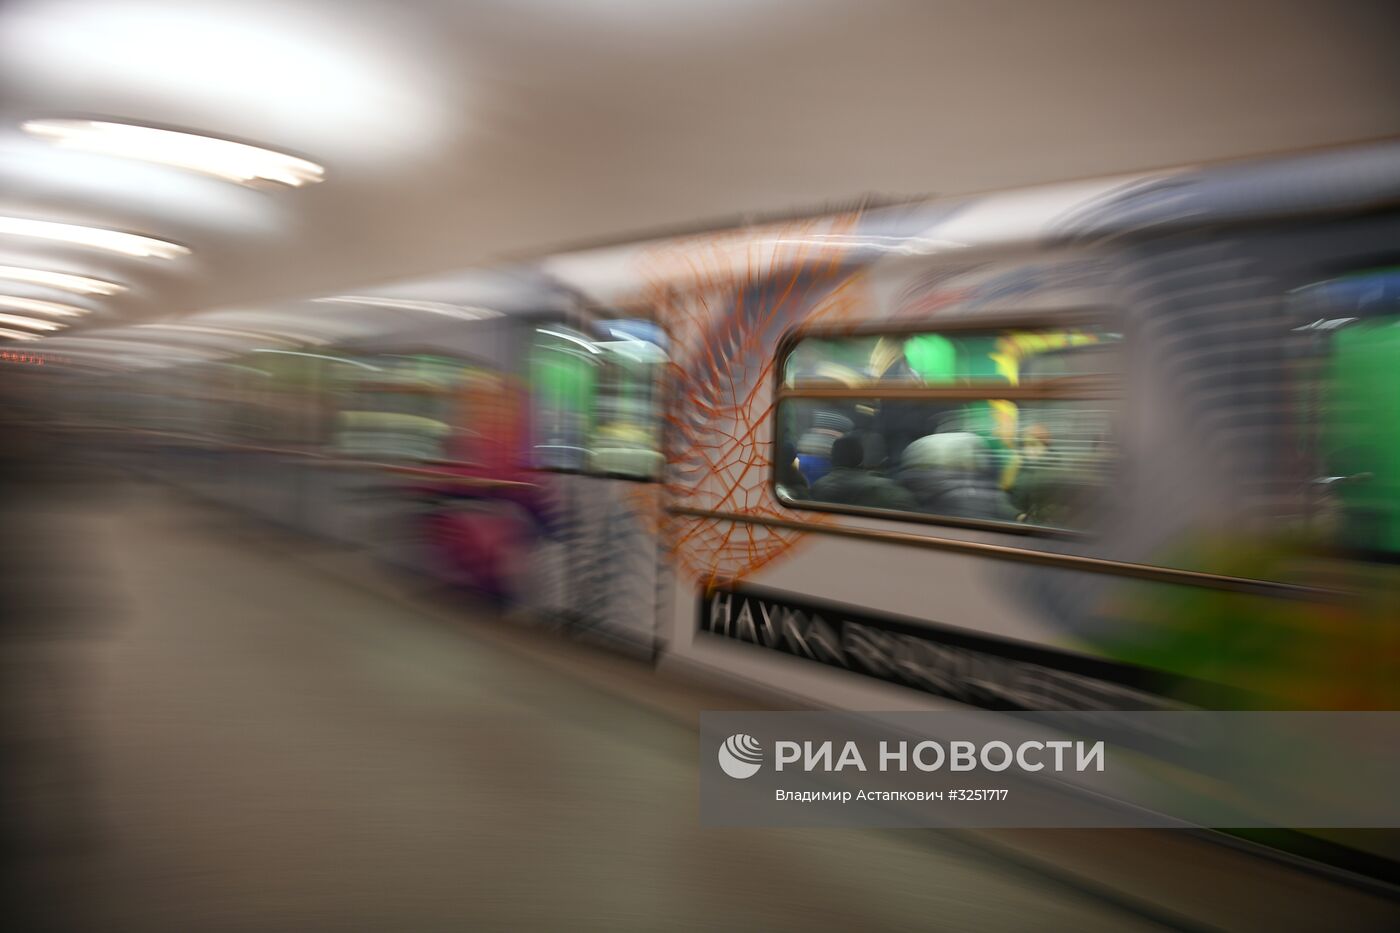 Запуск поезда метро "Наука будущего"